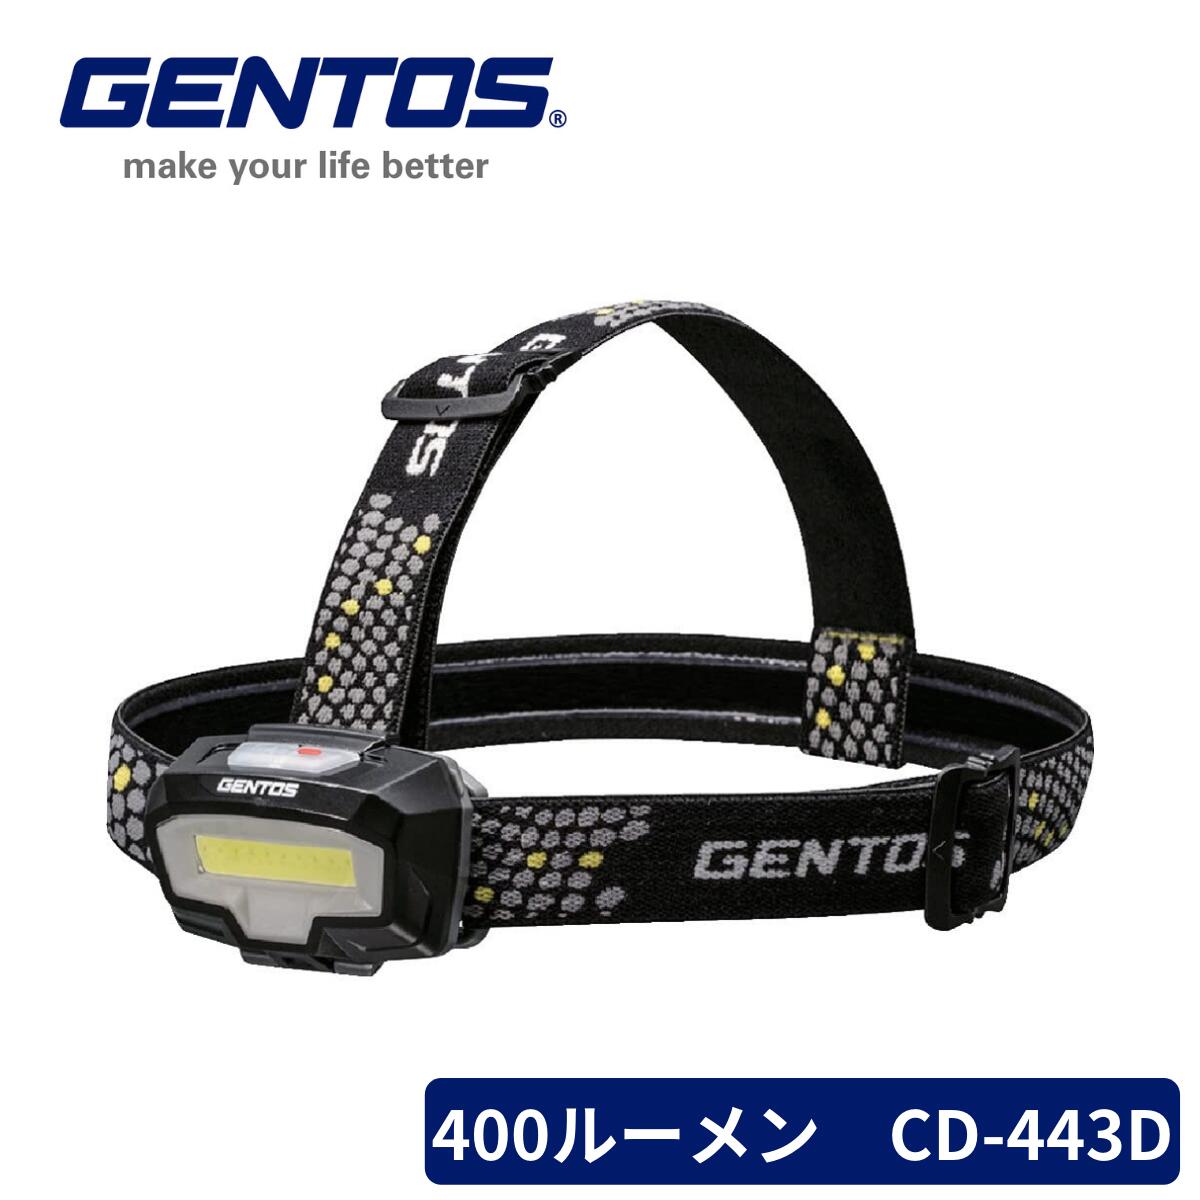 【本日ポイント2倍】GENTOS LED ヘッドライト CB-443D コンブレーカー 単4電池式 400ルーメン 2色 白/赤 父の日 早割